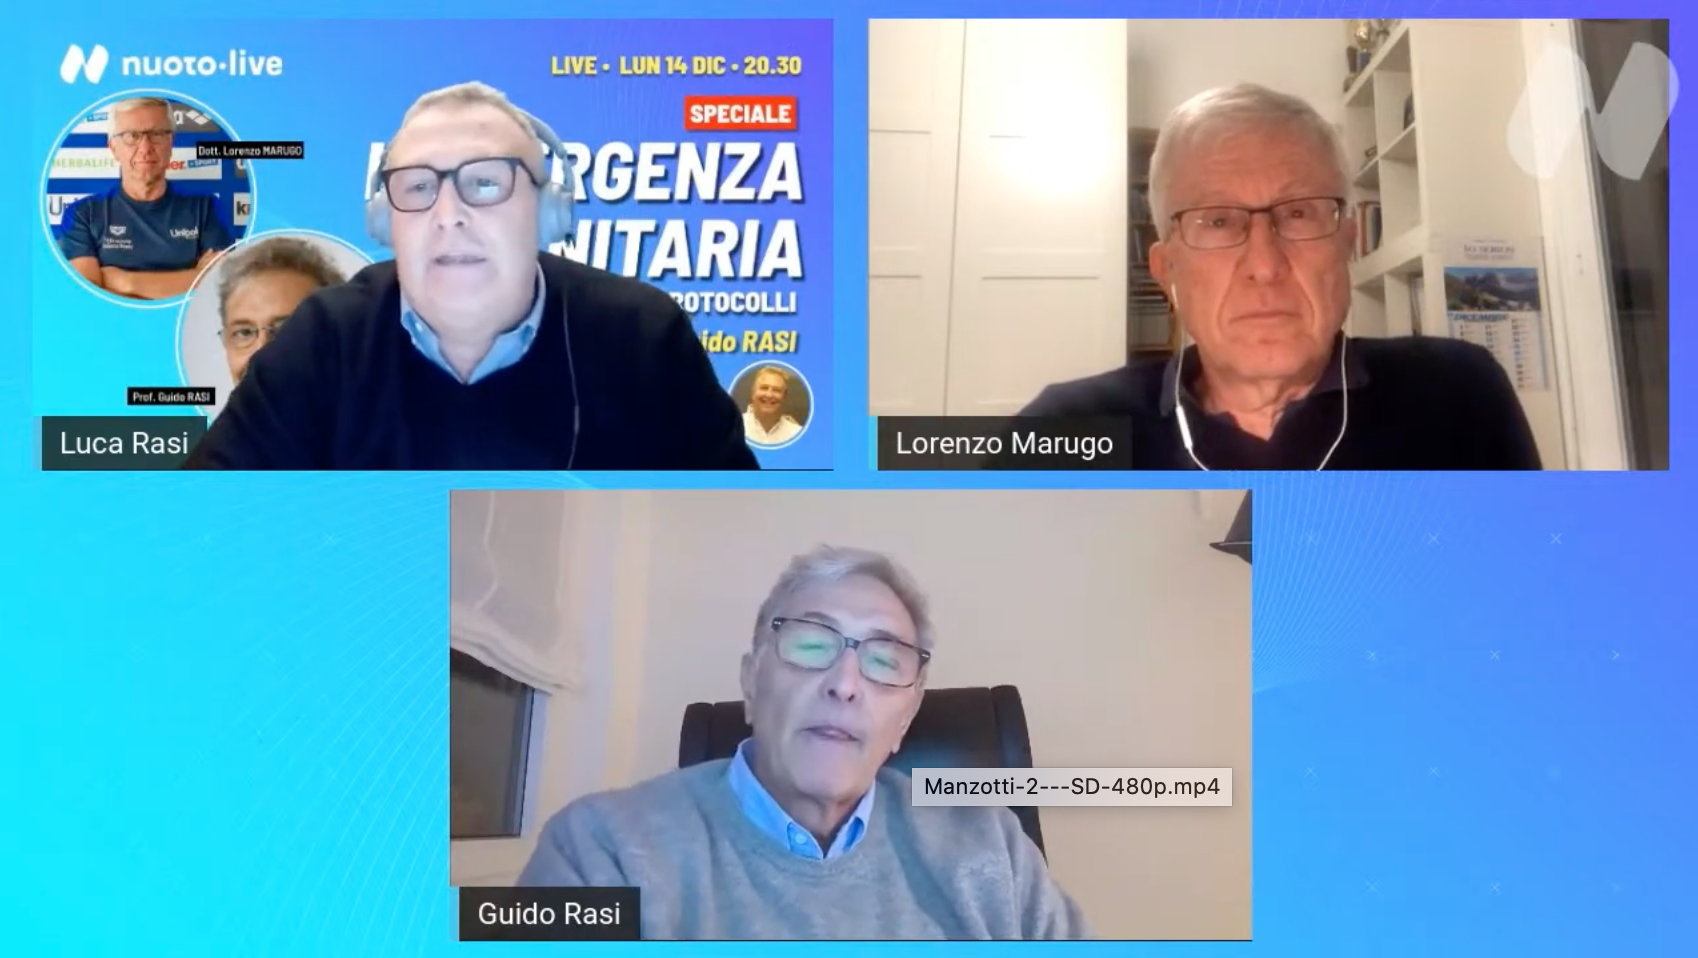 Live stasera. Emergenza sanitaria. “Vaccini e protocolli” con Lorenzo Marugo e Guido Rasi